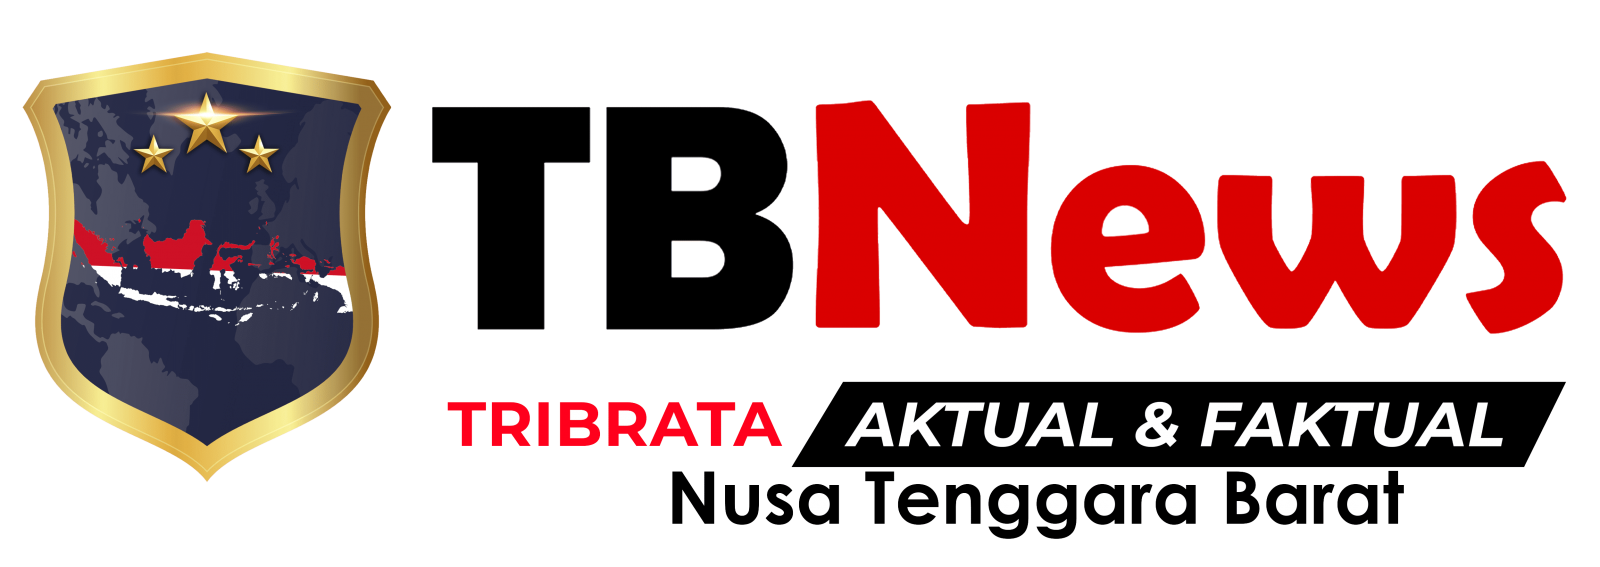 Tribatanews NTB